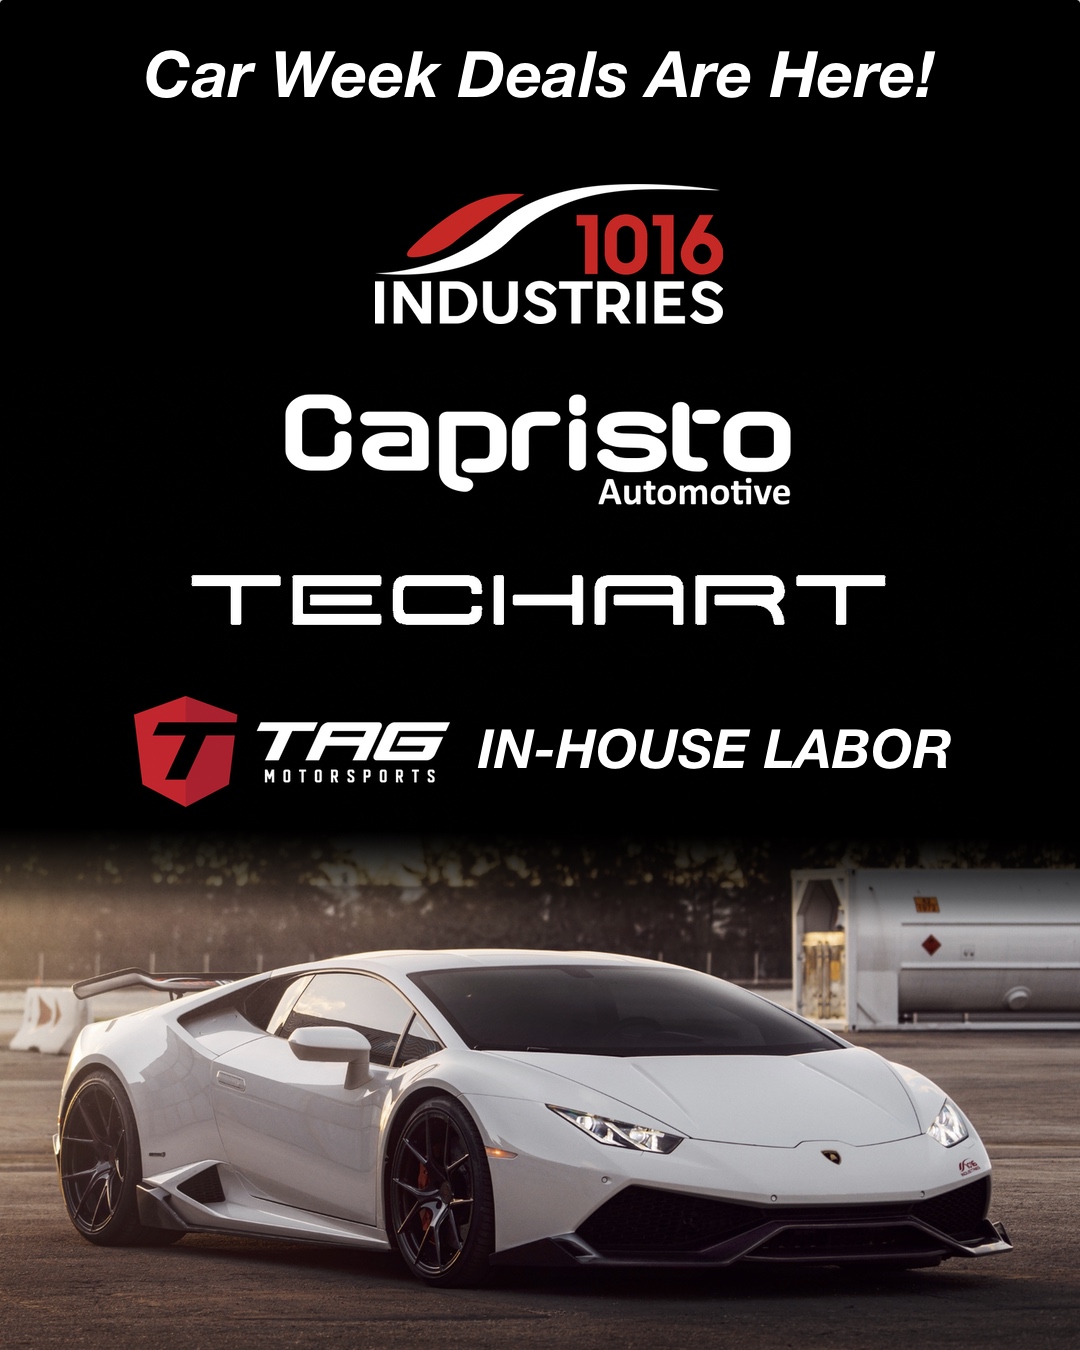 Car Week Deals - 1016 Industries - TechArt - Capristo - TAG Labor